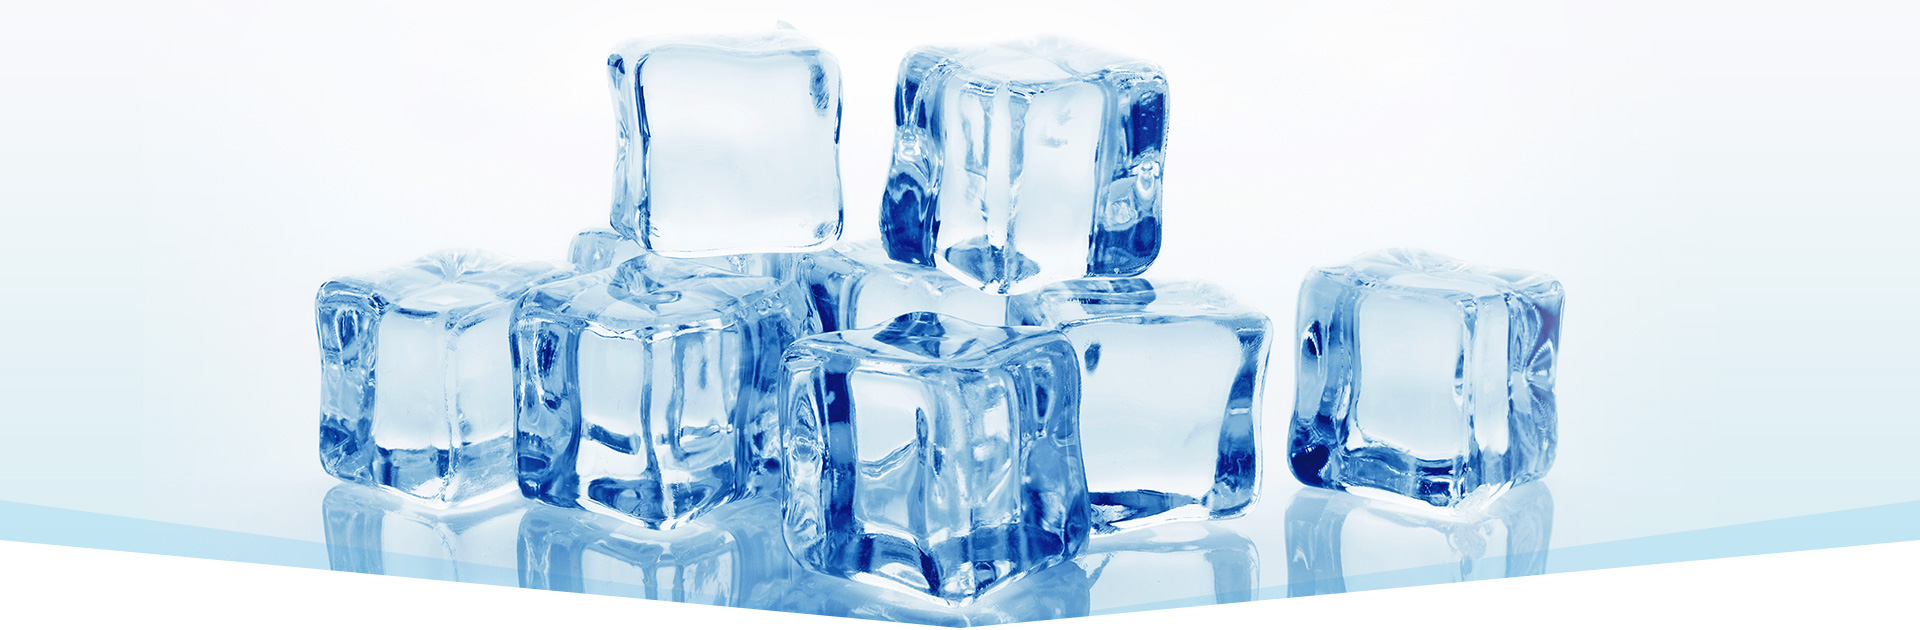 有限会社 アイス松本 京都の氷屋 純氷 ブロック氷 カットアイス かちわり氷 かき氷機 カップ シロップ一式